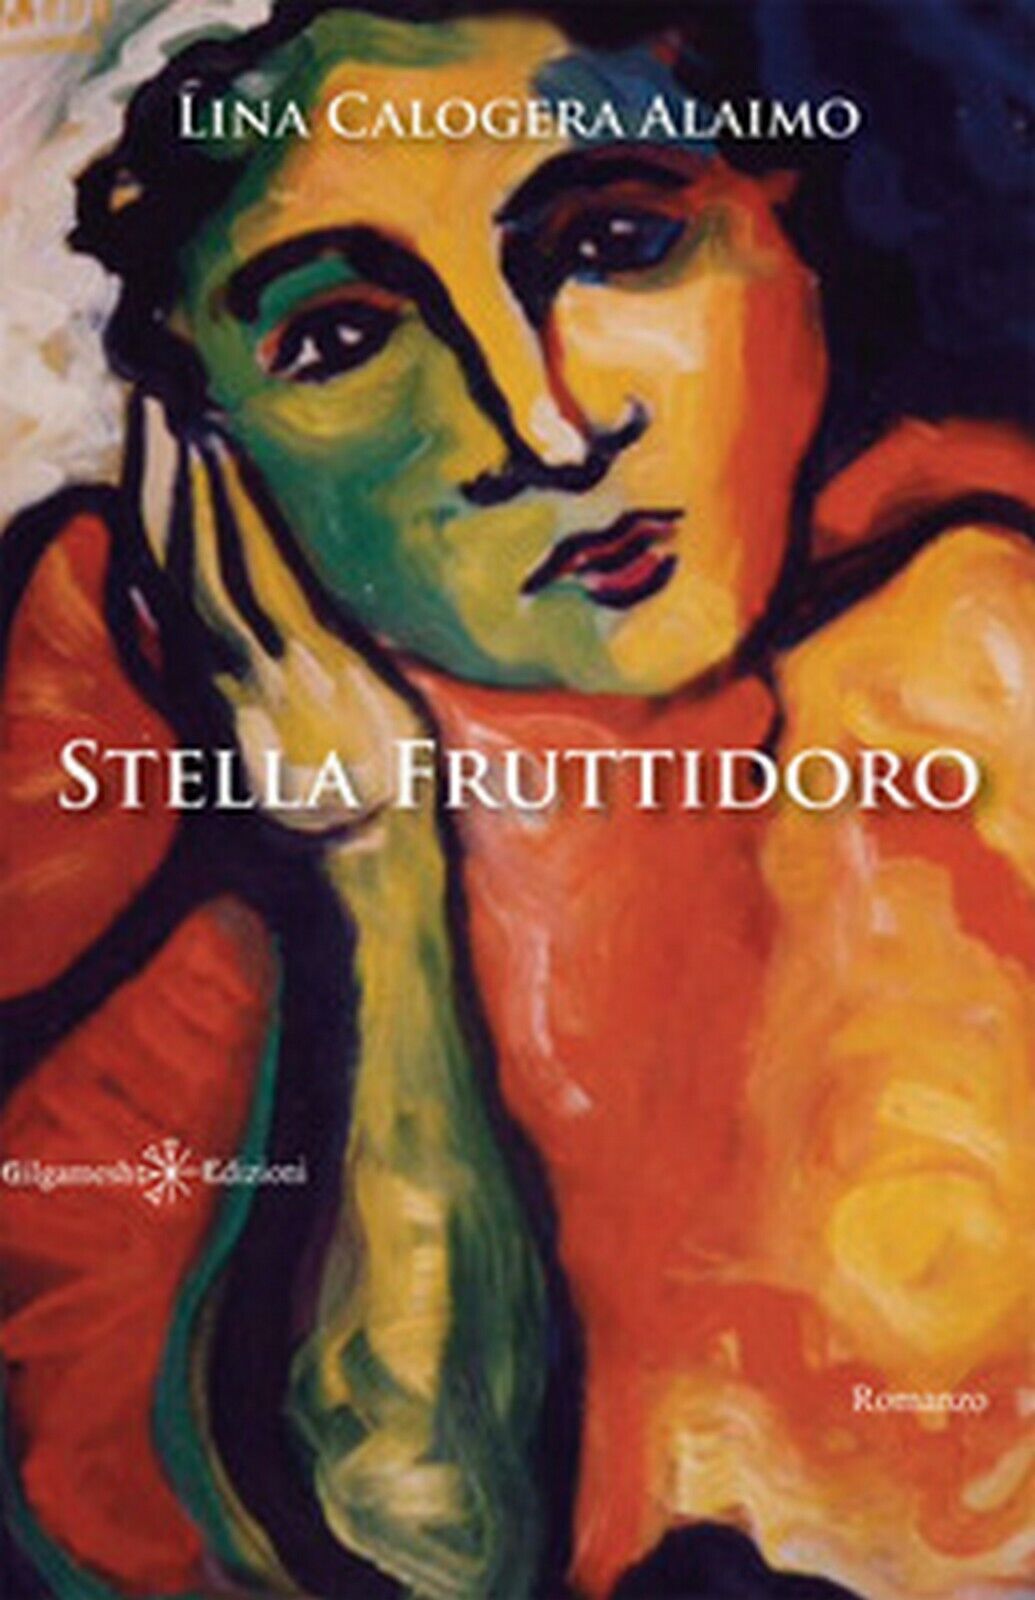 Stella Fruttidoro  di Lina Calogera Alaimo,  2020,  Gilgamesh libro usato